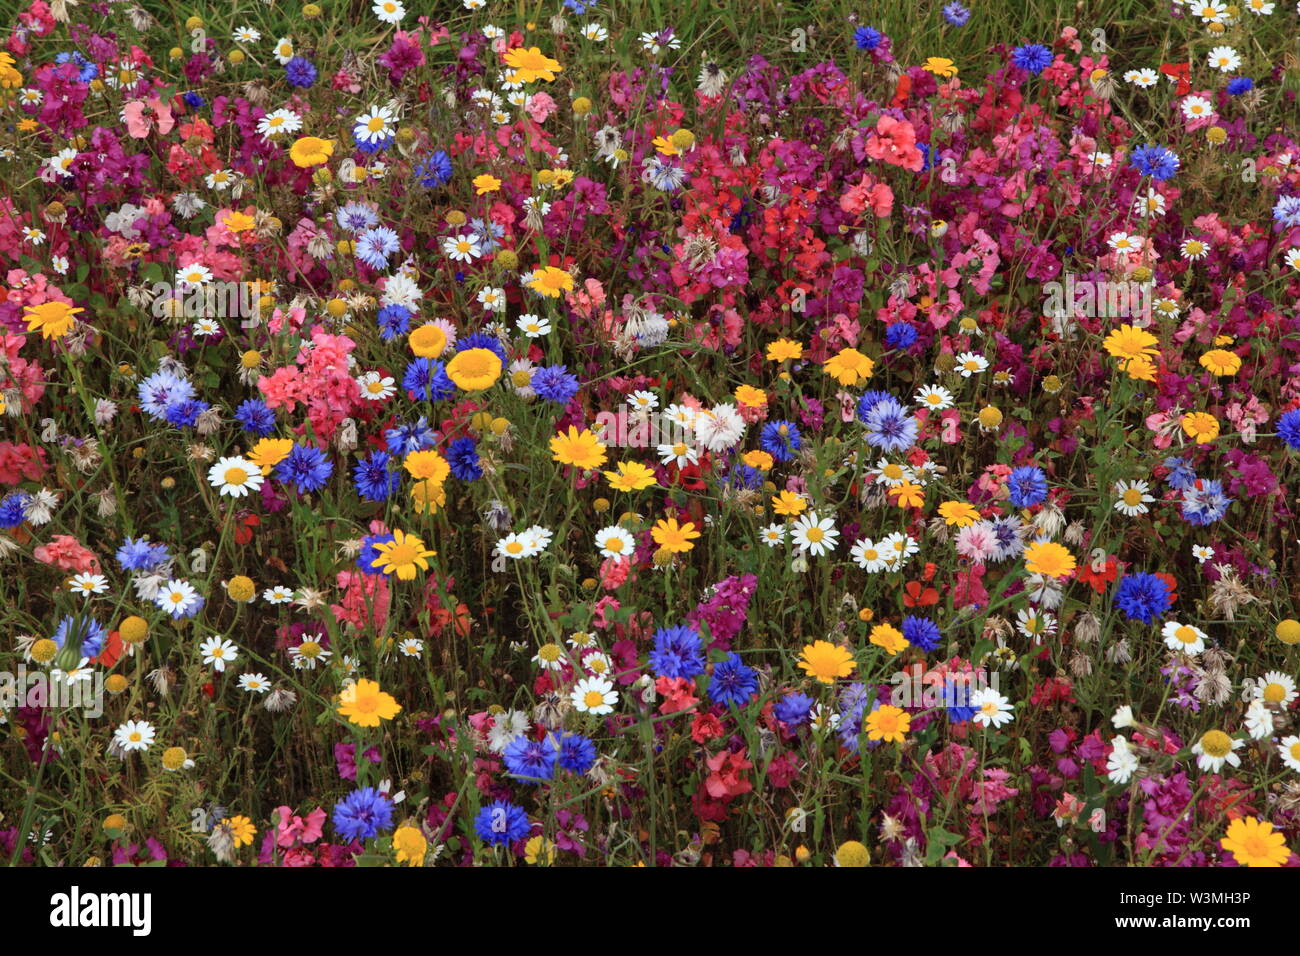 Fiore selvatico, giardino, semina, fiori, cornflowers, margherite, fiori selvatici, colorato, border, piantagione di massa Foto Stock